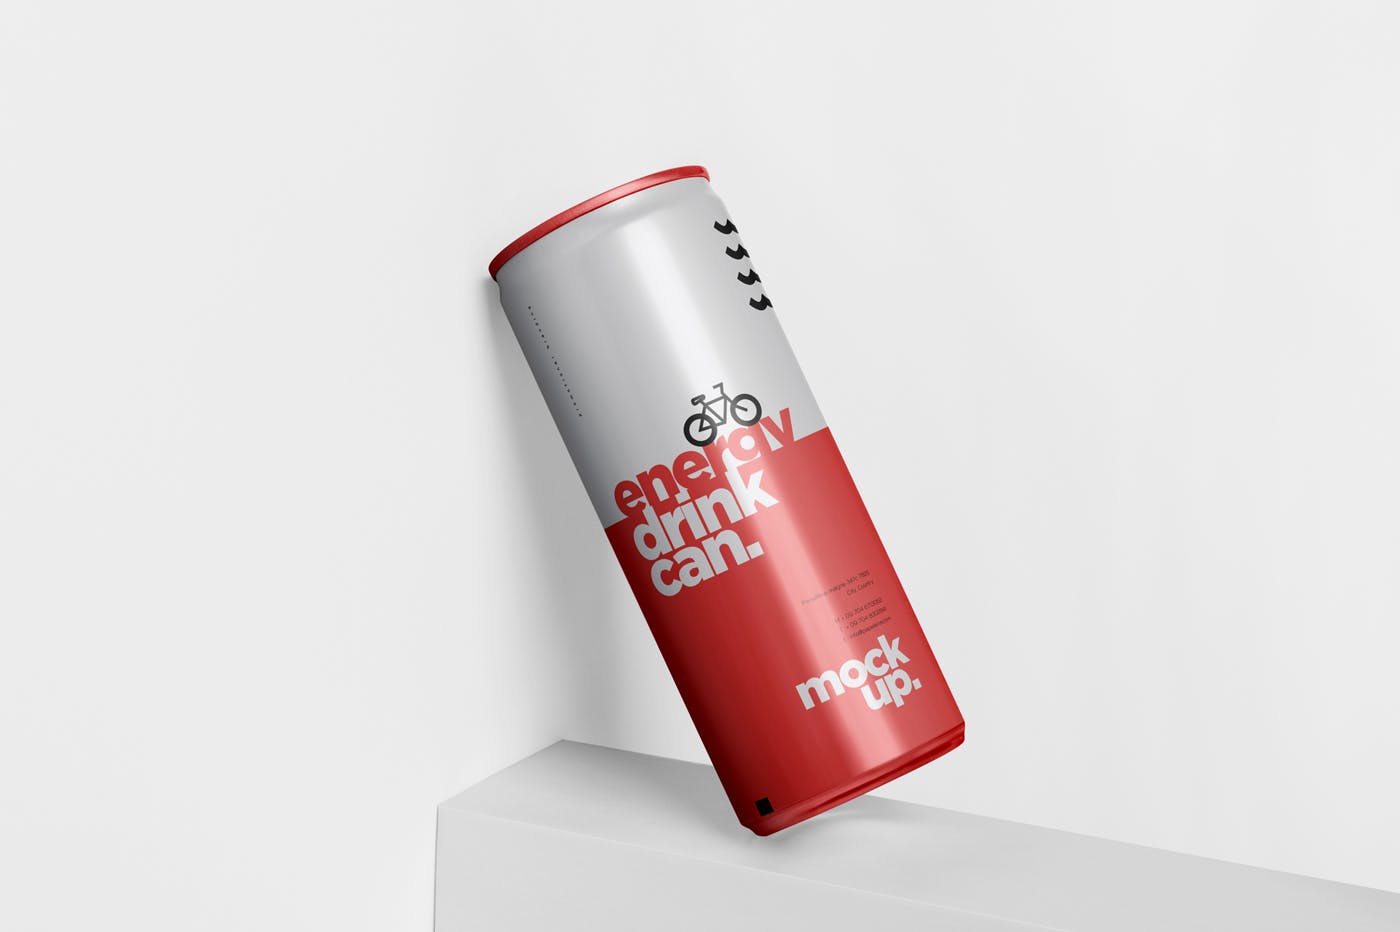 能量饮料易拉罐罐头外观设计非凡图库精选模板 Energy Drink Can Mock-Up – 250 ml插图(3)